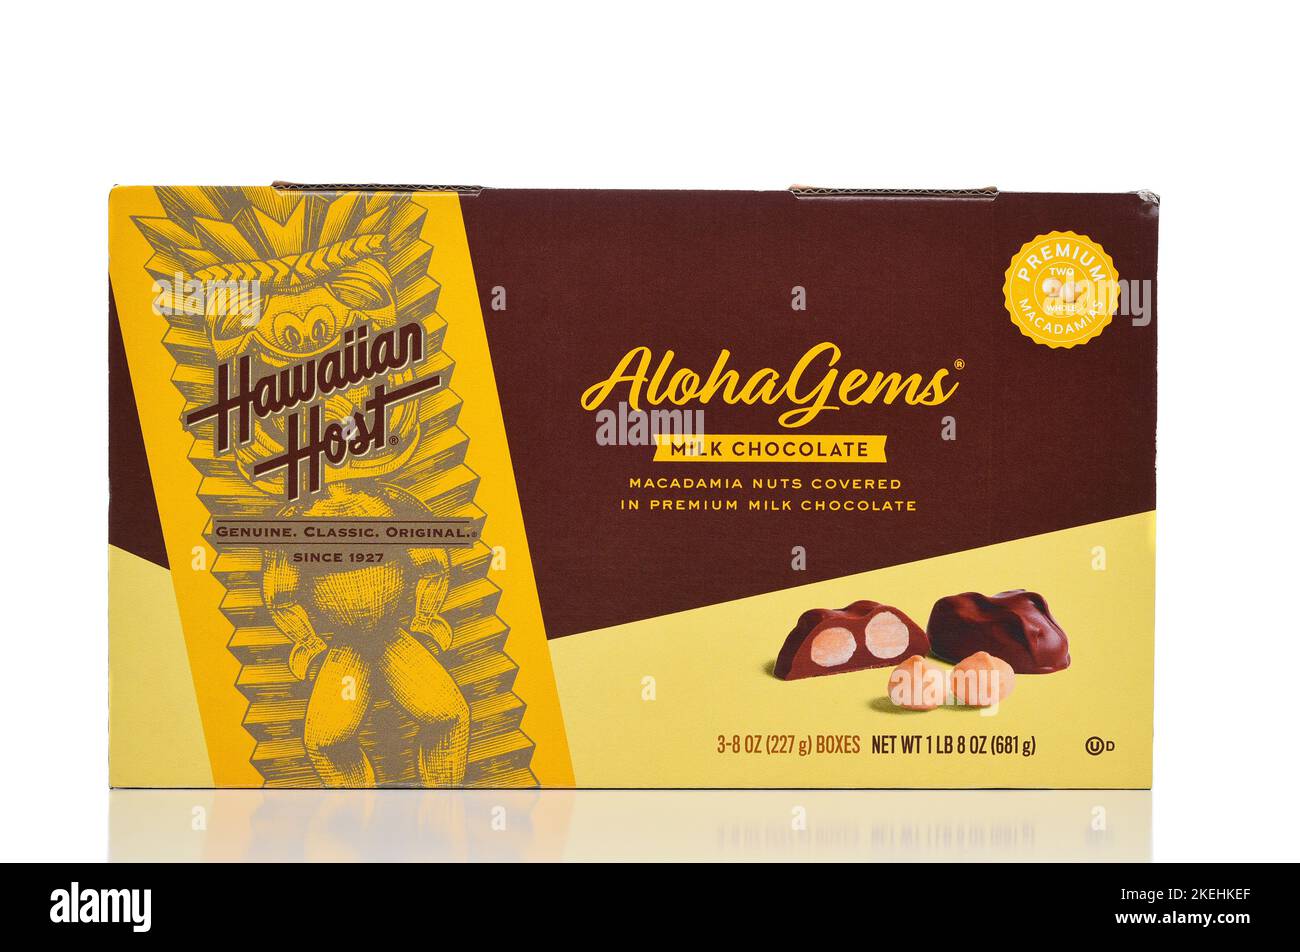 IRIVNE, CALIFORNIA - 12 NOV 2022: A box of Aloha Gems Milk Chocolate Macadamia Nuts from Hawaiian Host. Stock Photo